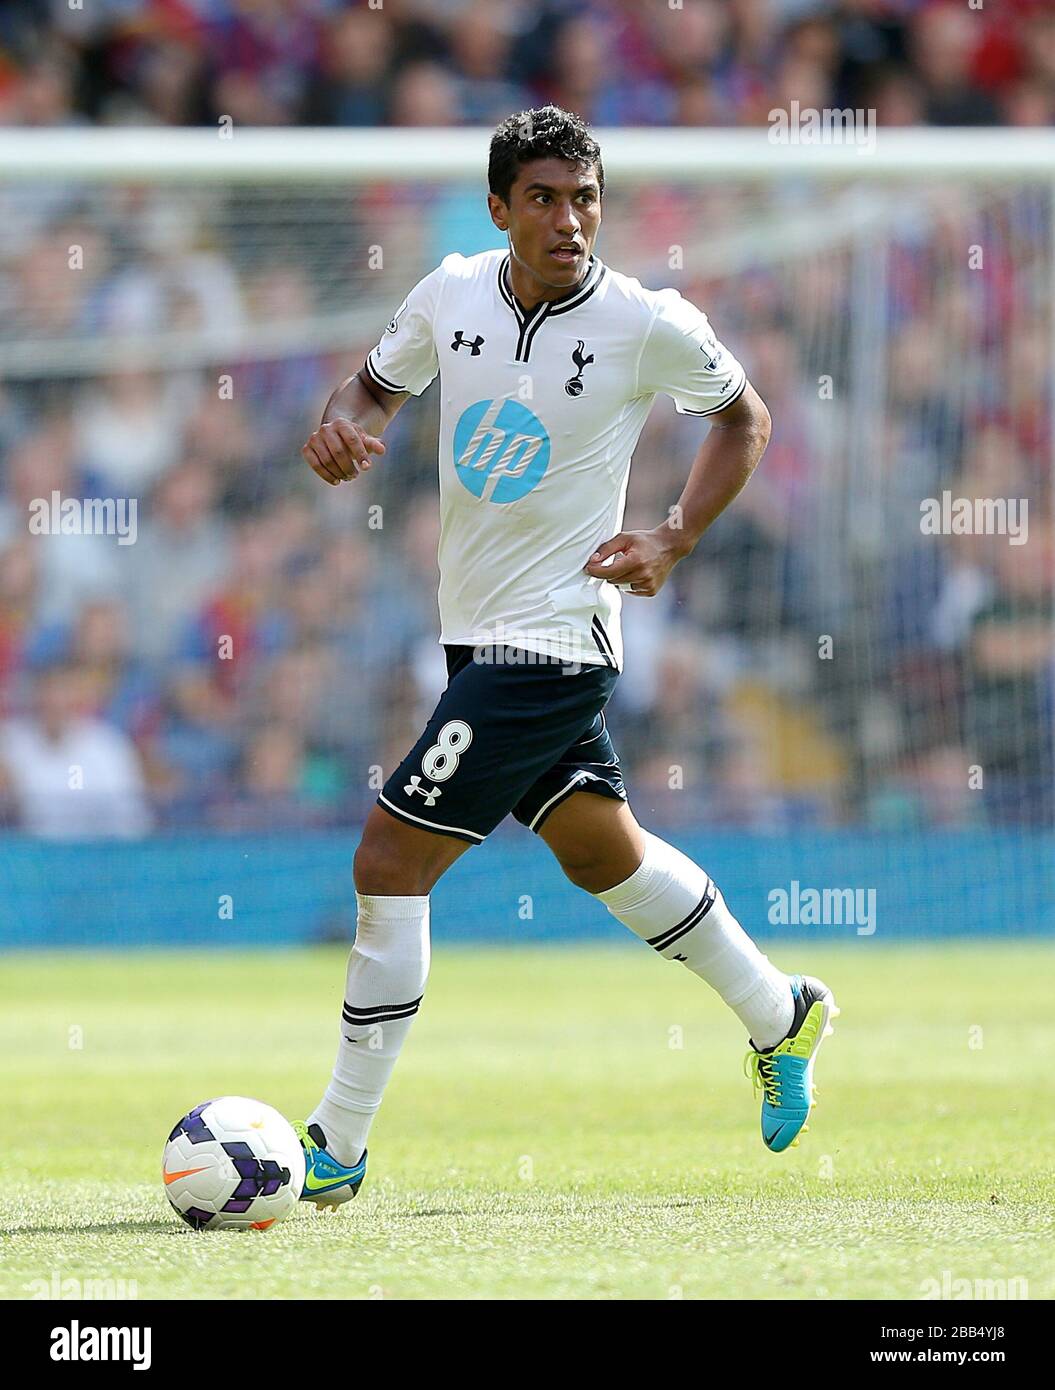 Joe Paulo Paulinho, Tottenham Hotspur Stock Photo